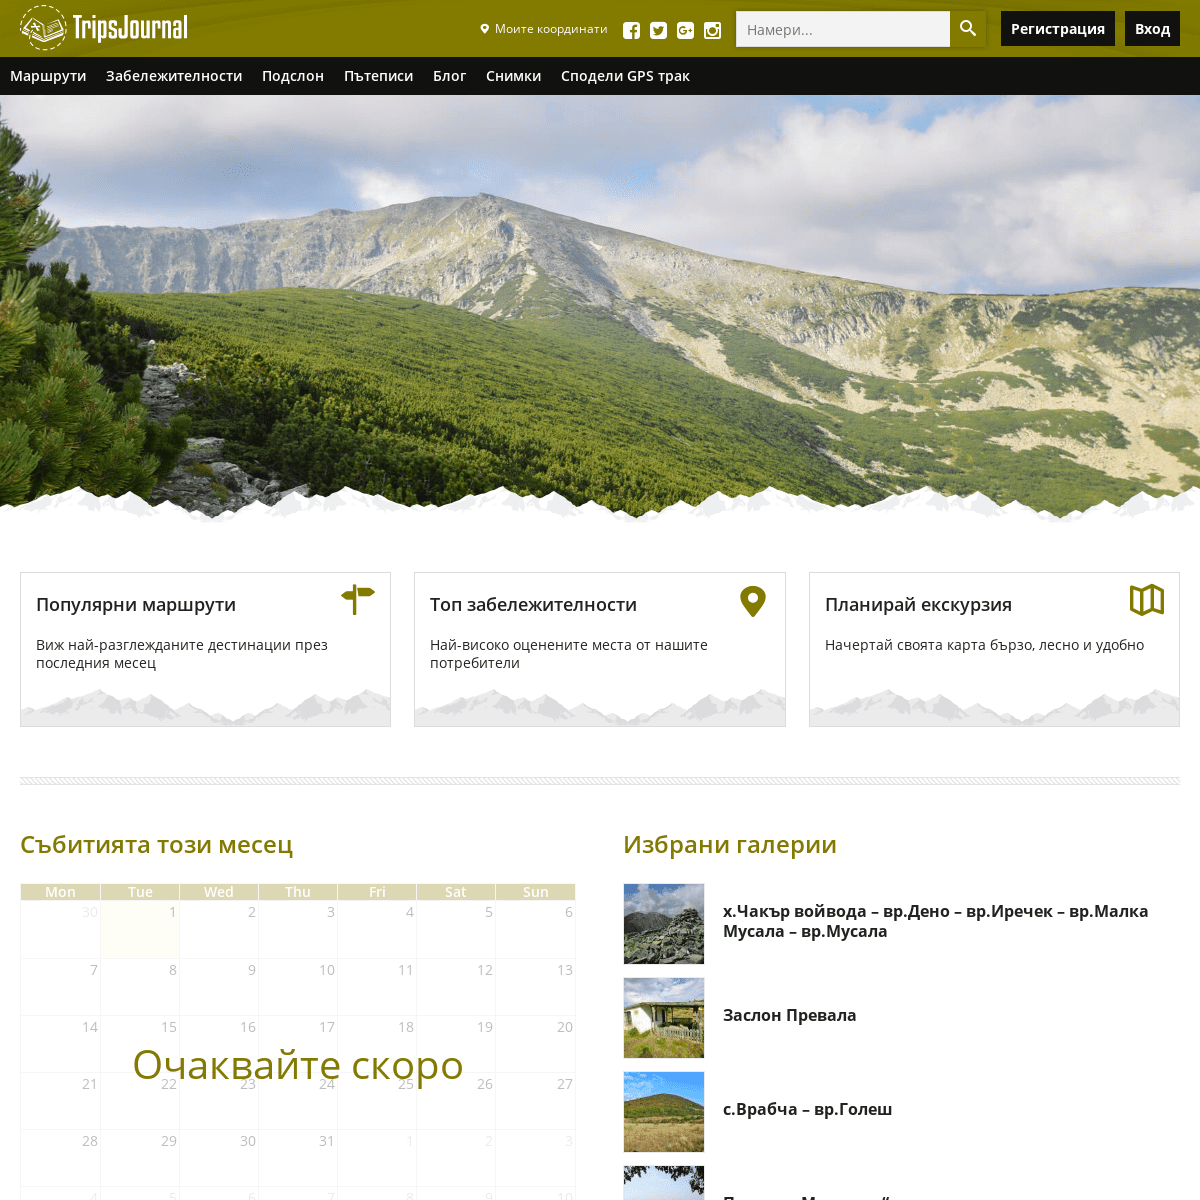 Trips Journal - туристически маршрути и планински преходи в България